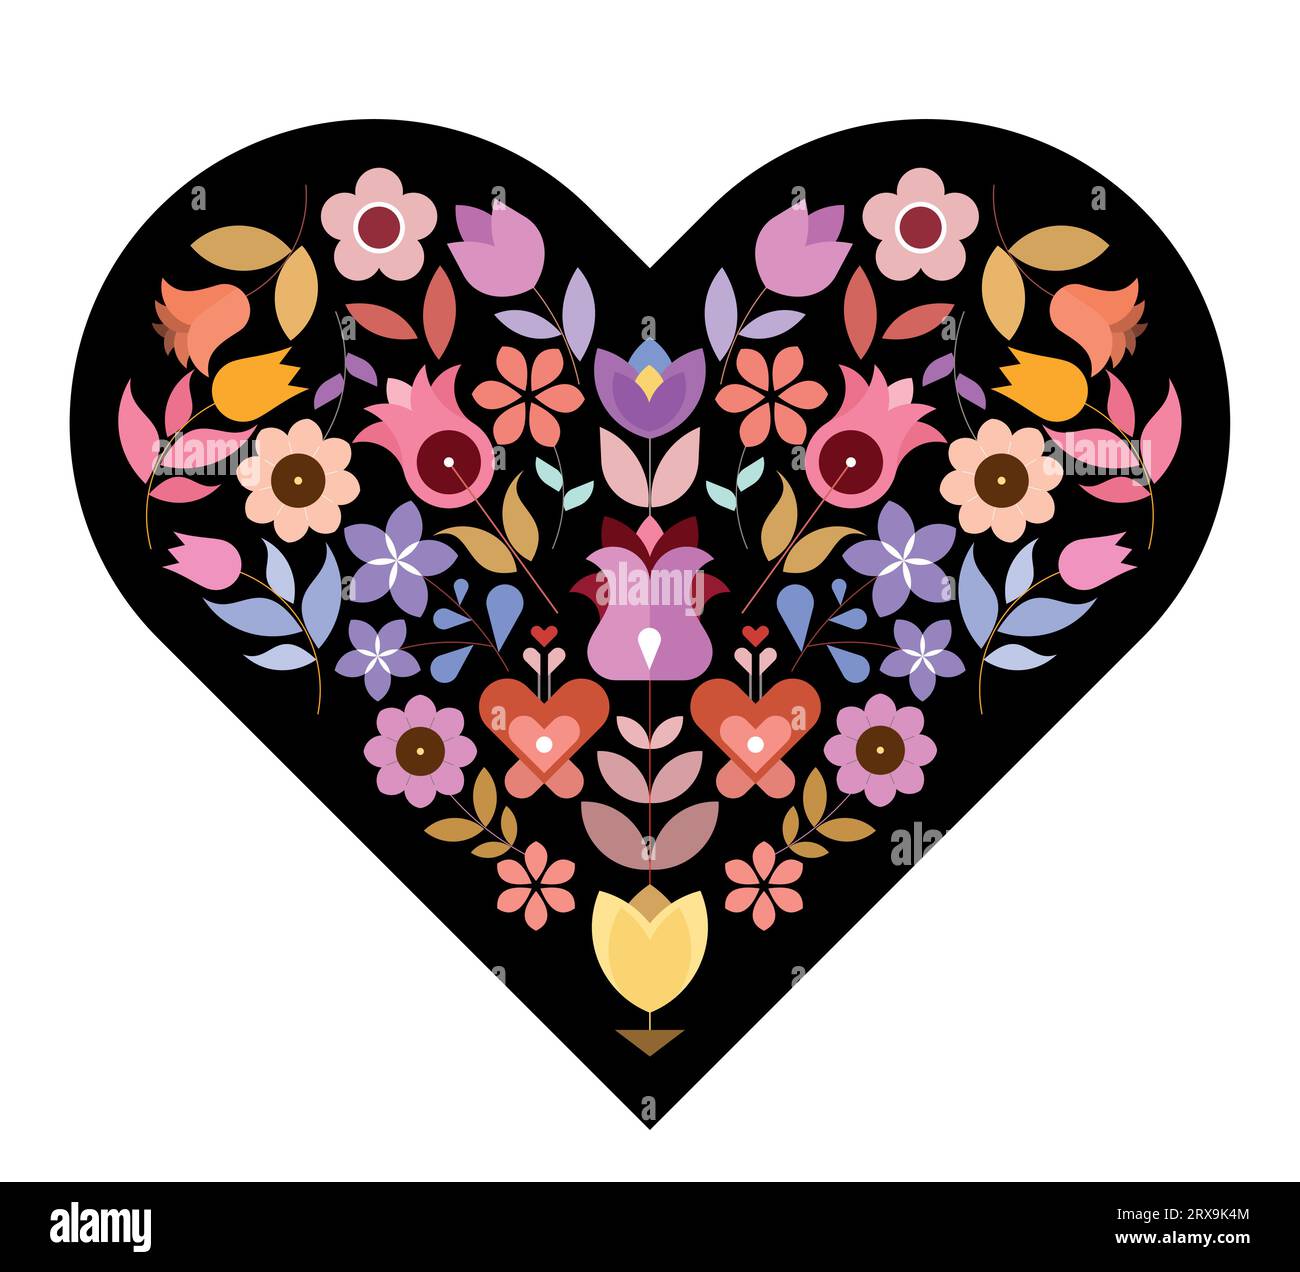 Conception florale vectorielle de forme de coeur avec de nombreuses fleurs différentes à l'intérieur isolé sur un fond noir. Illustration de Vecteur